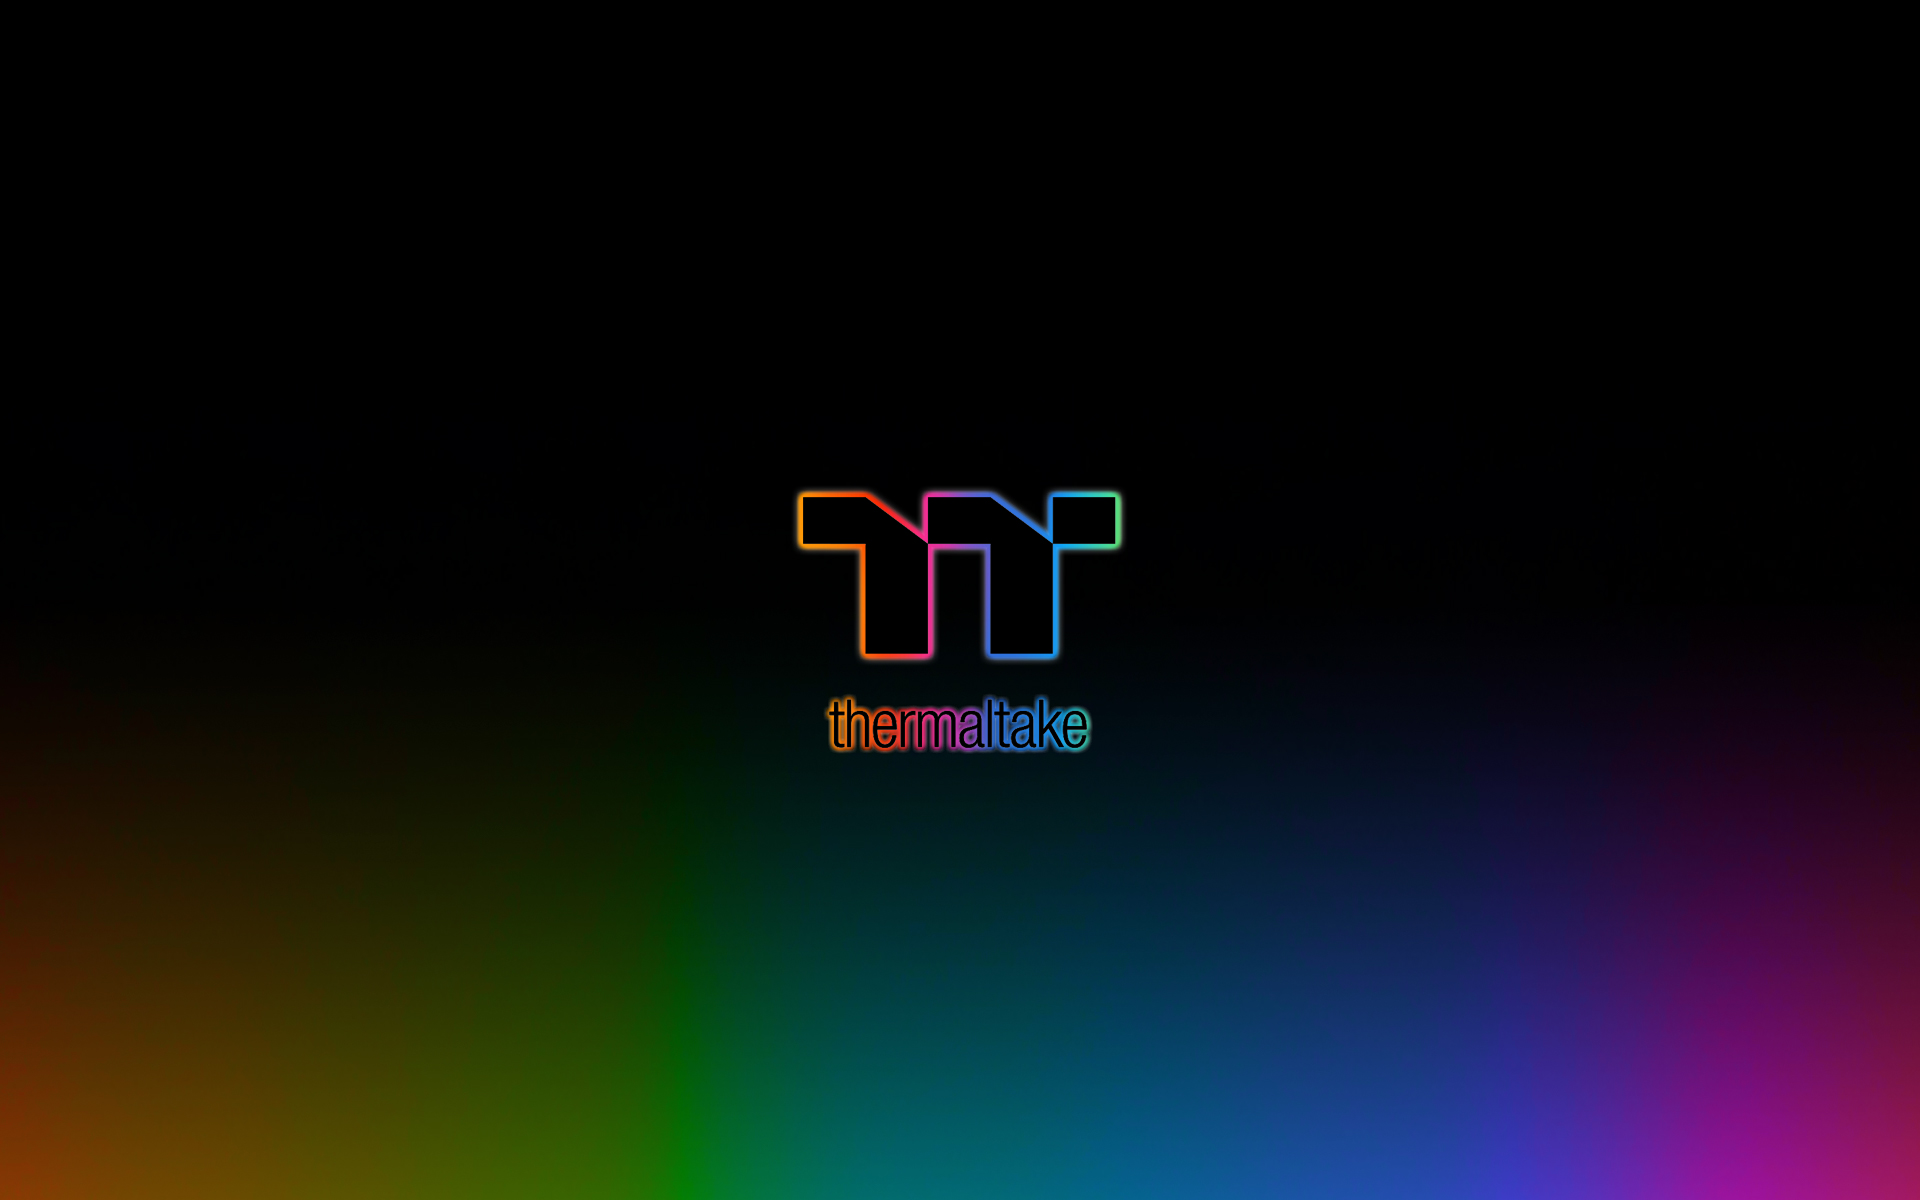 CES 2020 : Thermaltake NeonMaker, le logiciel pour programmer un show RGB dans votre PC